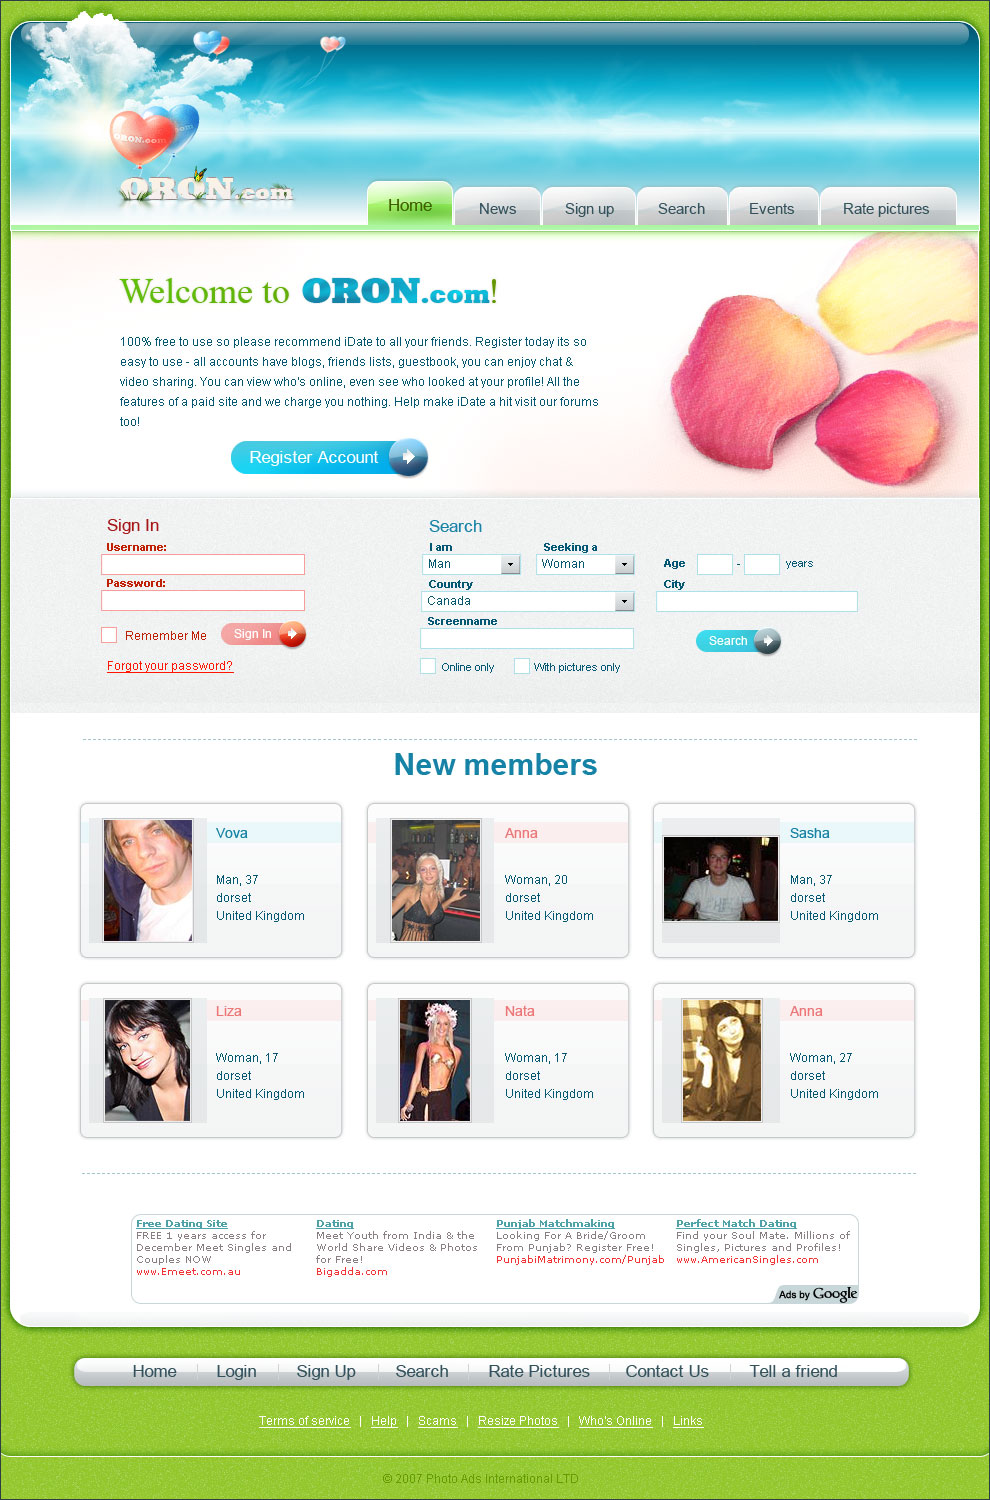 ORON.com